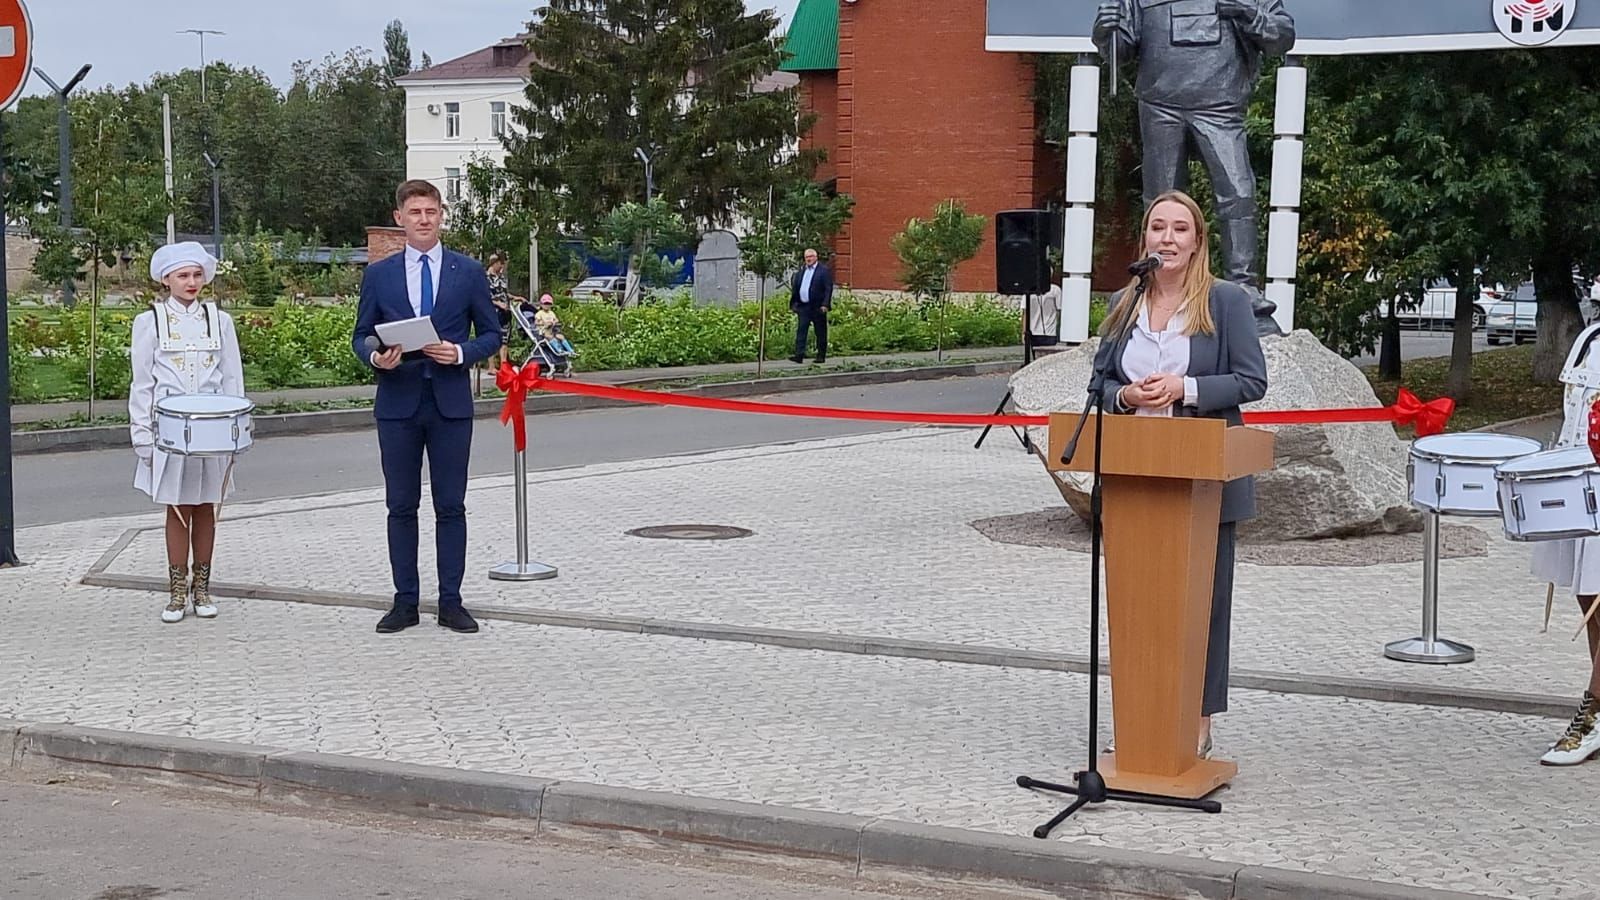 Сегодня на улице В. Шашина состоялось открытие памятника геологу и сквера геофизиков